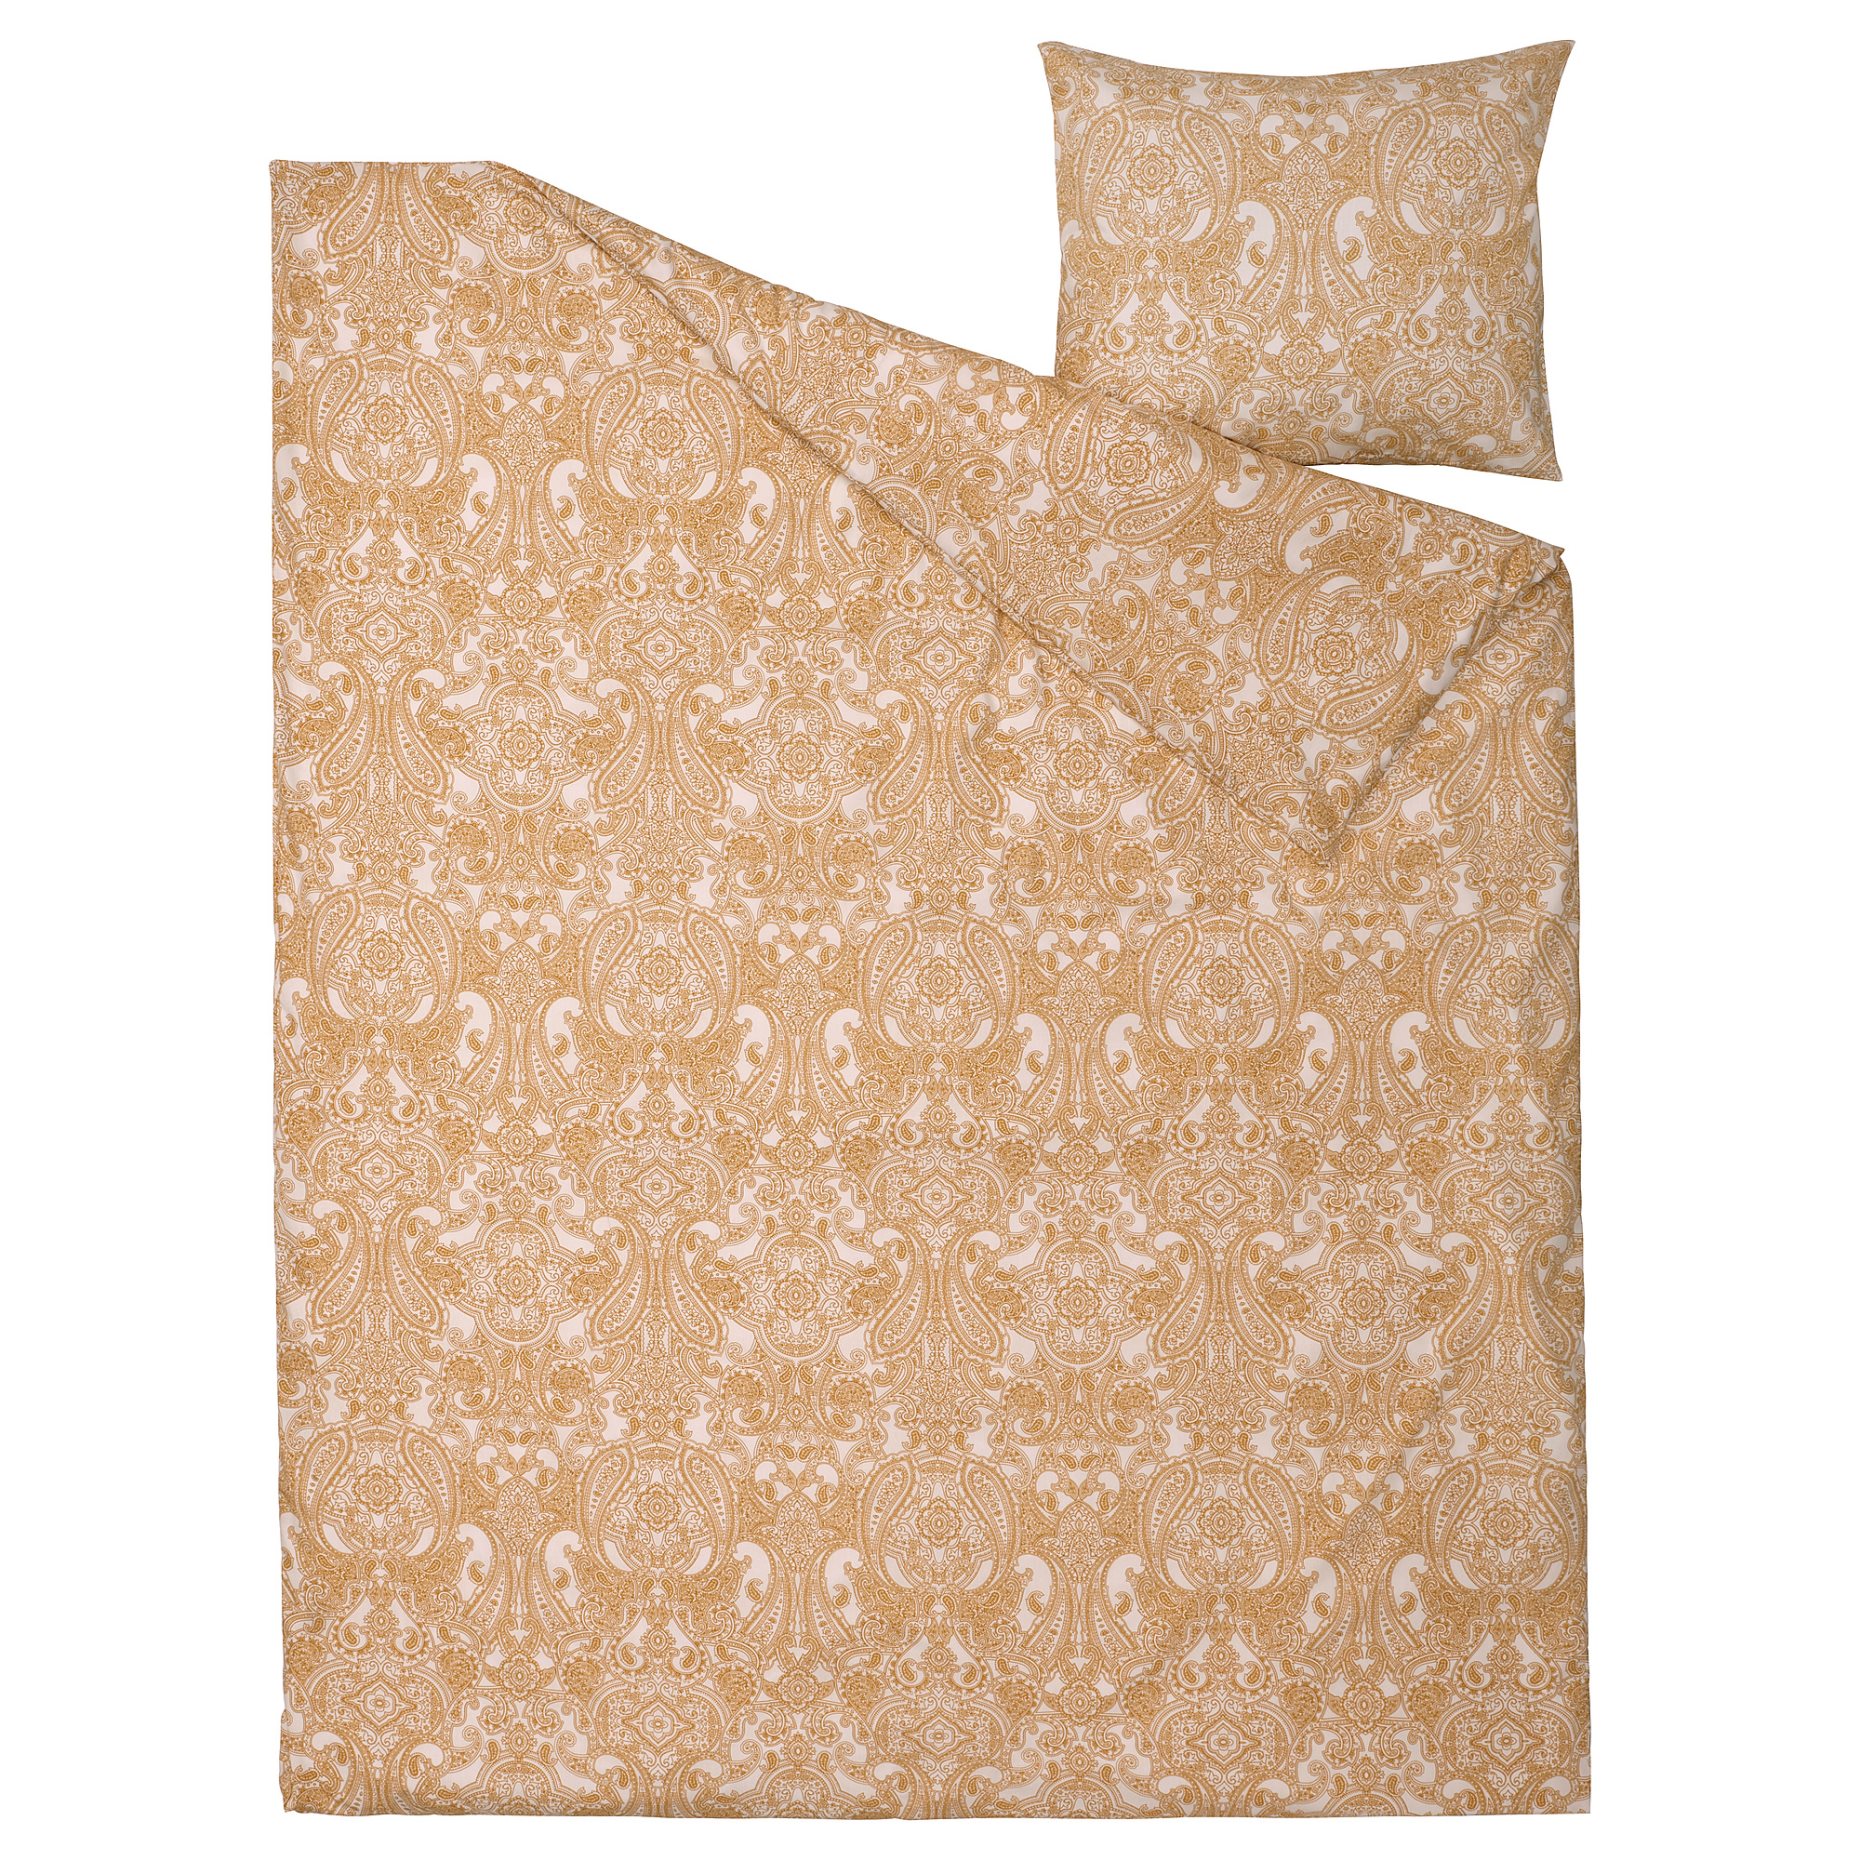 JÄTTEVALLMO, duvet cover and pillowcase, 150x200/50x60 cm, 805.469.78